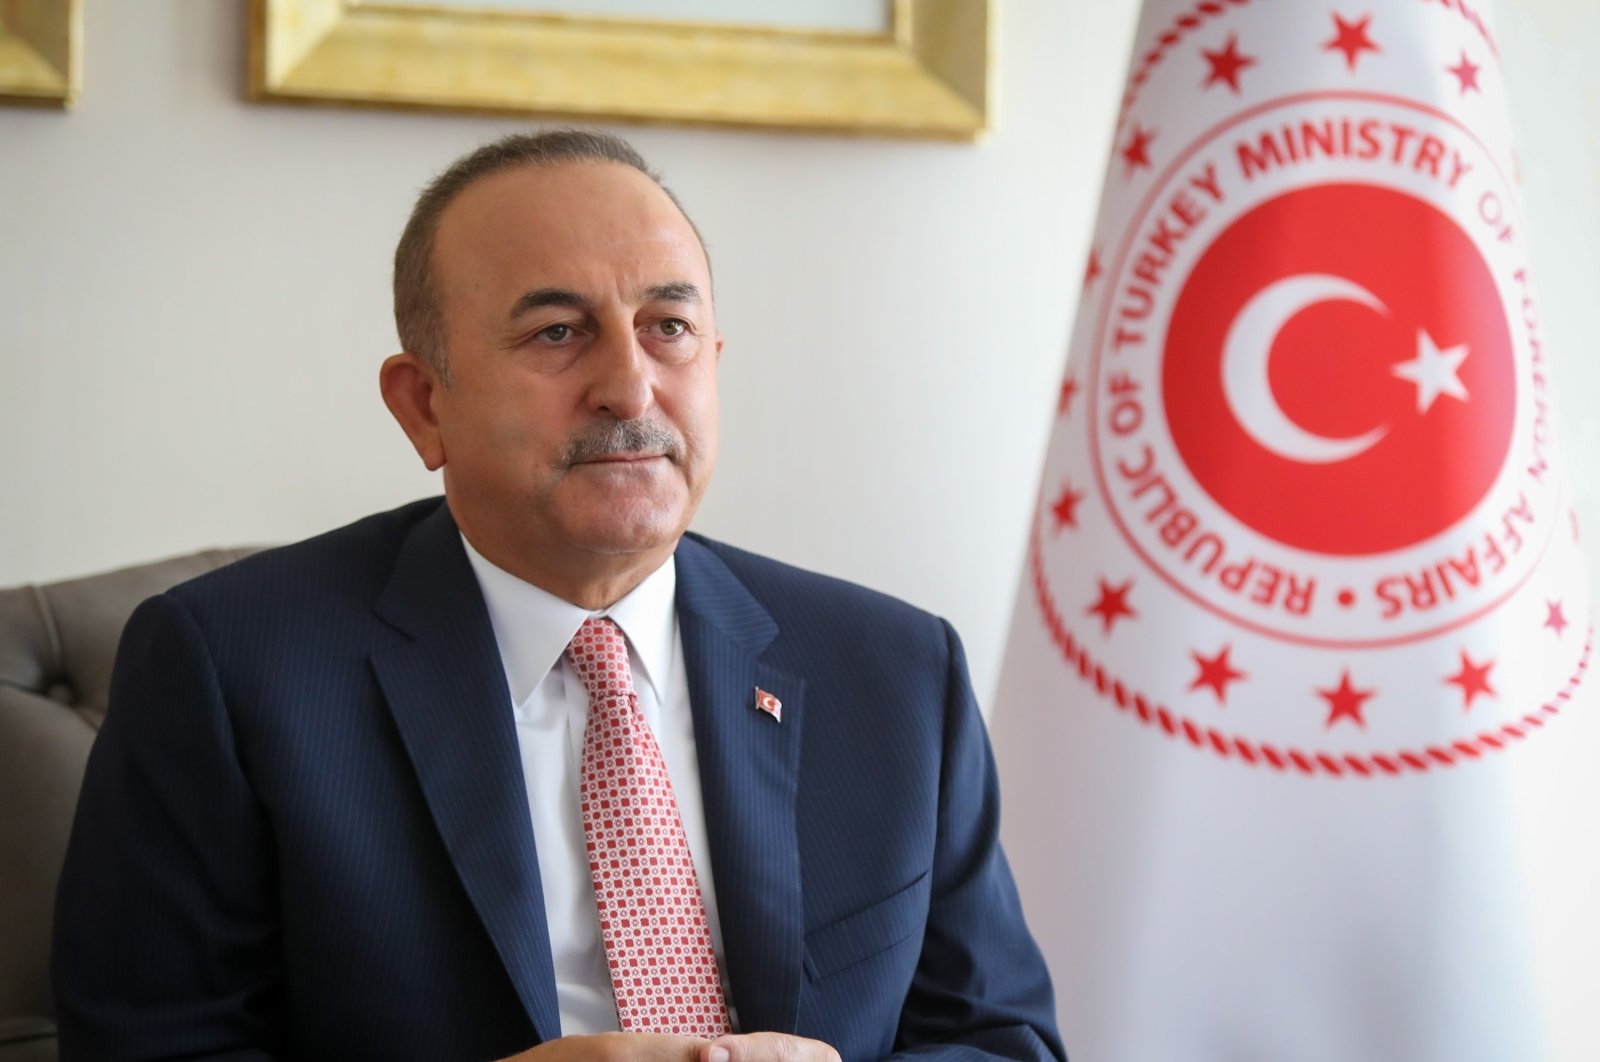 Τουρκία και Αίγυπτος θα συζητήσουν για το διορισμό απεσταλμένων: FM Çavuşoğlu